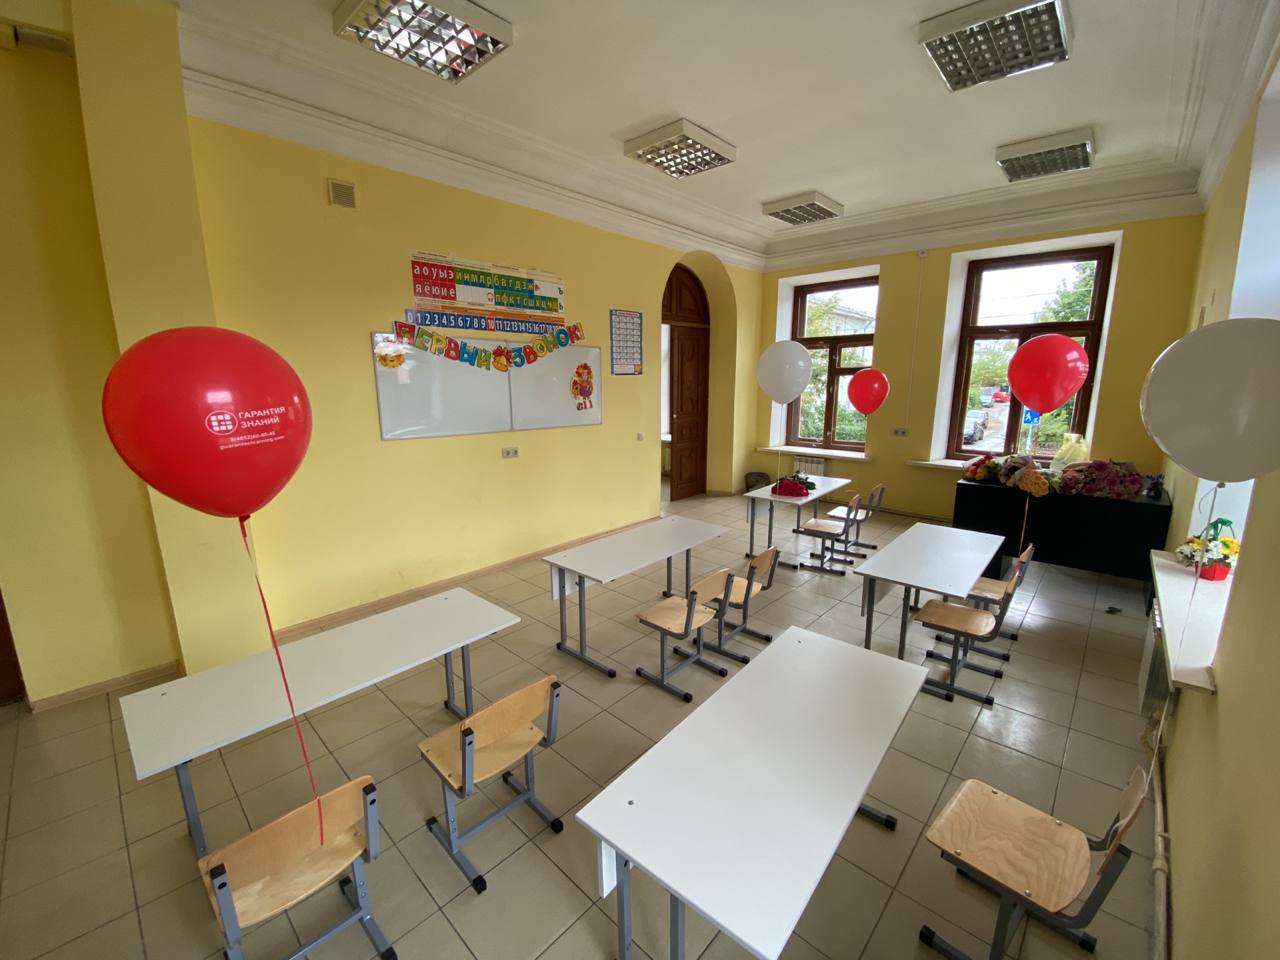 Частная общеобразовательная школа Гарантия Знаний в Ярославле - обучение с 1 по 11 класс